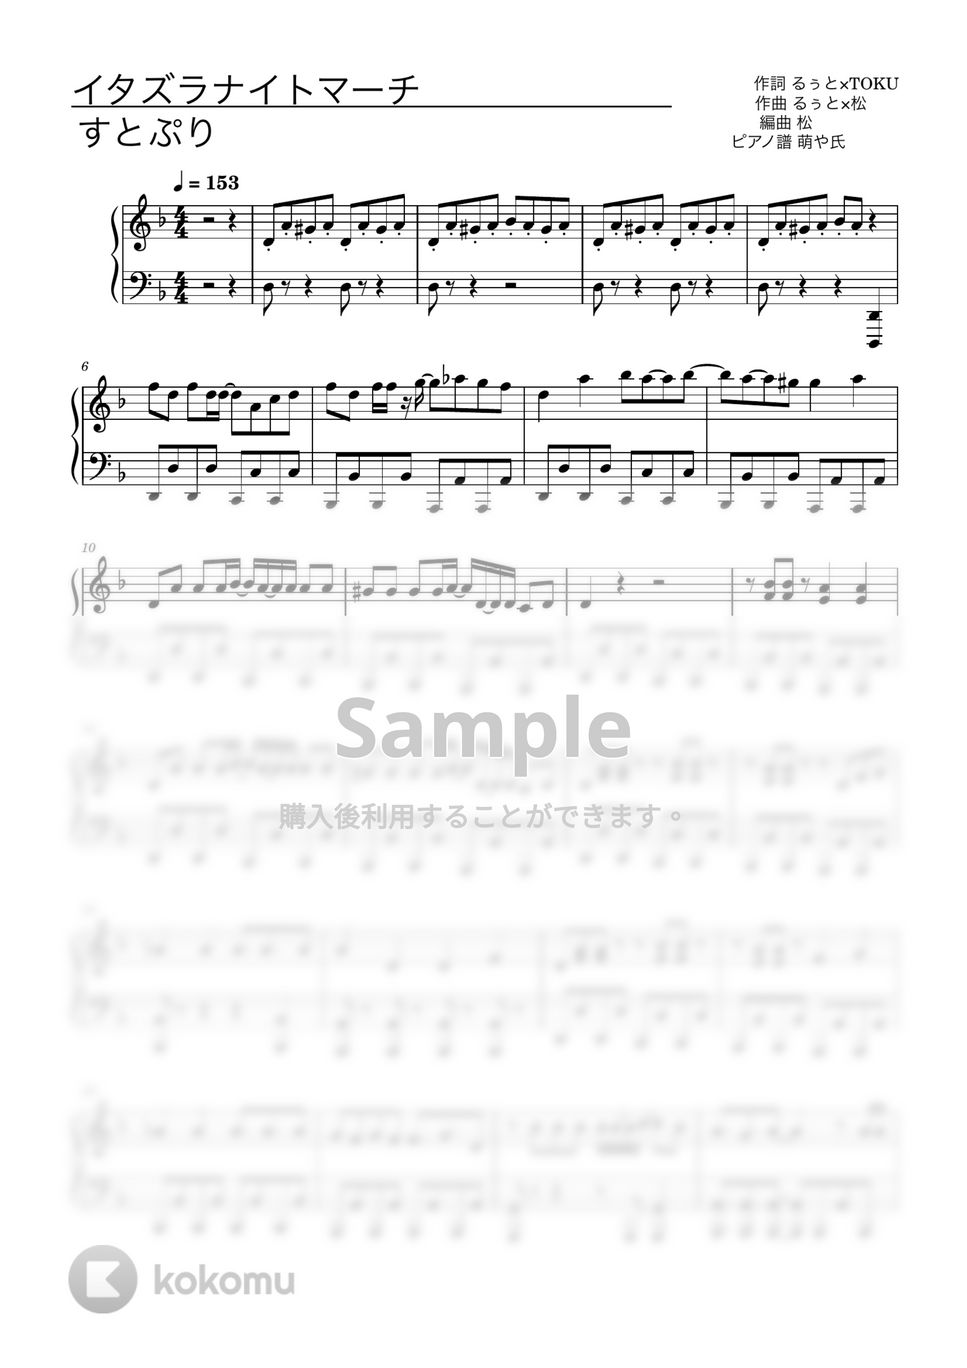 すとぷり - イタズラナイトマーチ (ピアノソロ譜) by 萌や氏